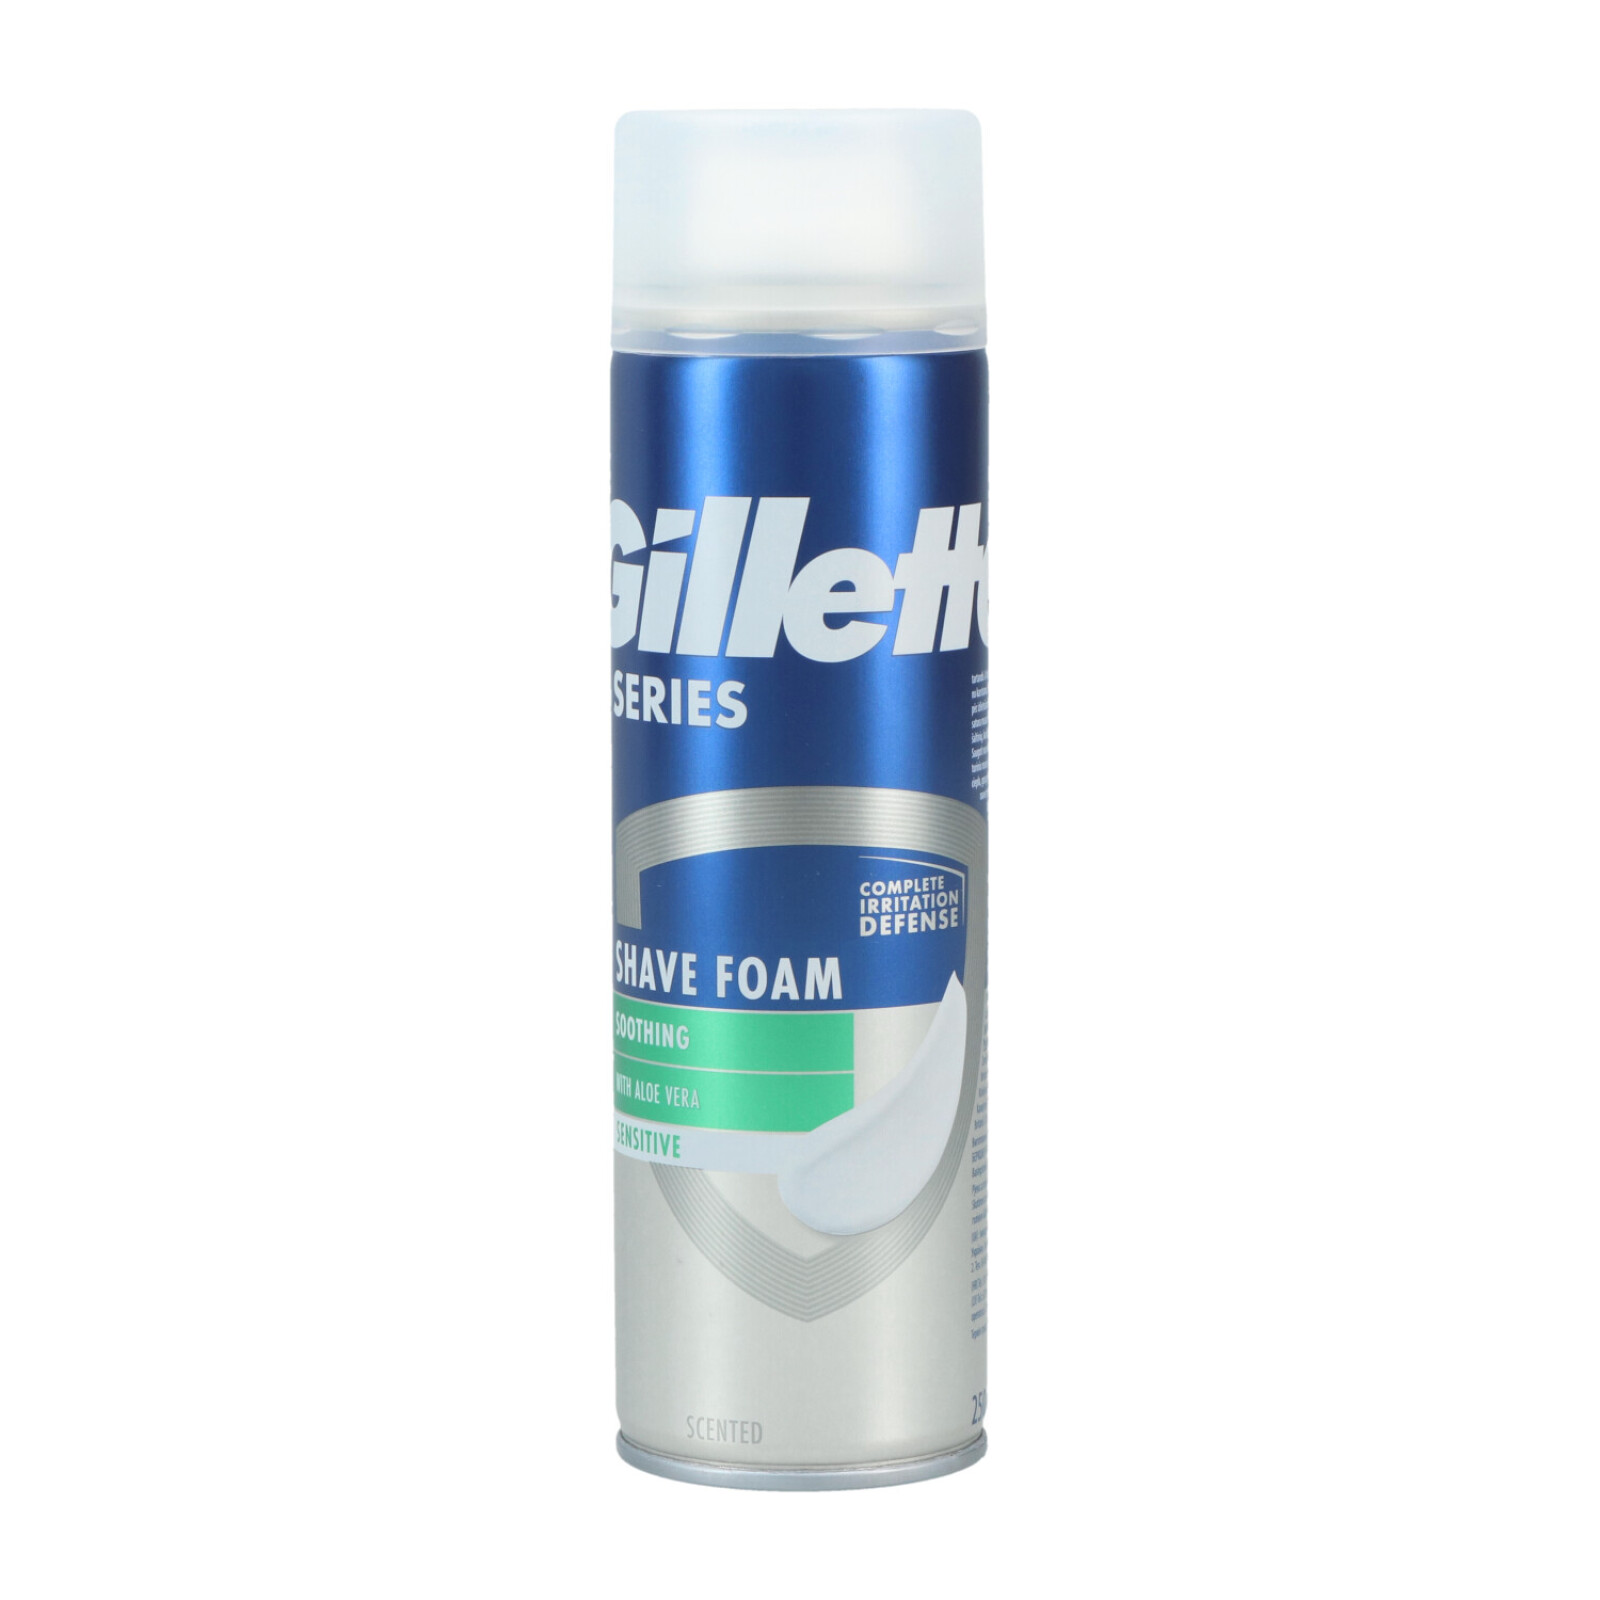 Gillette Series Shaving Foam 250ml Soothing Sensitive